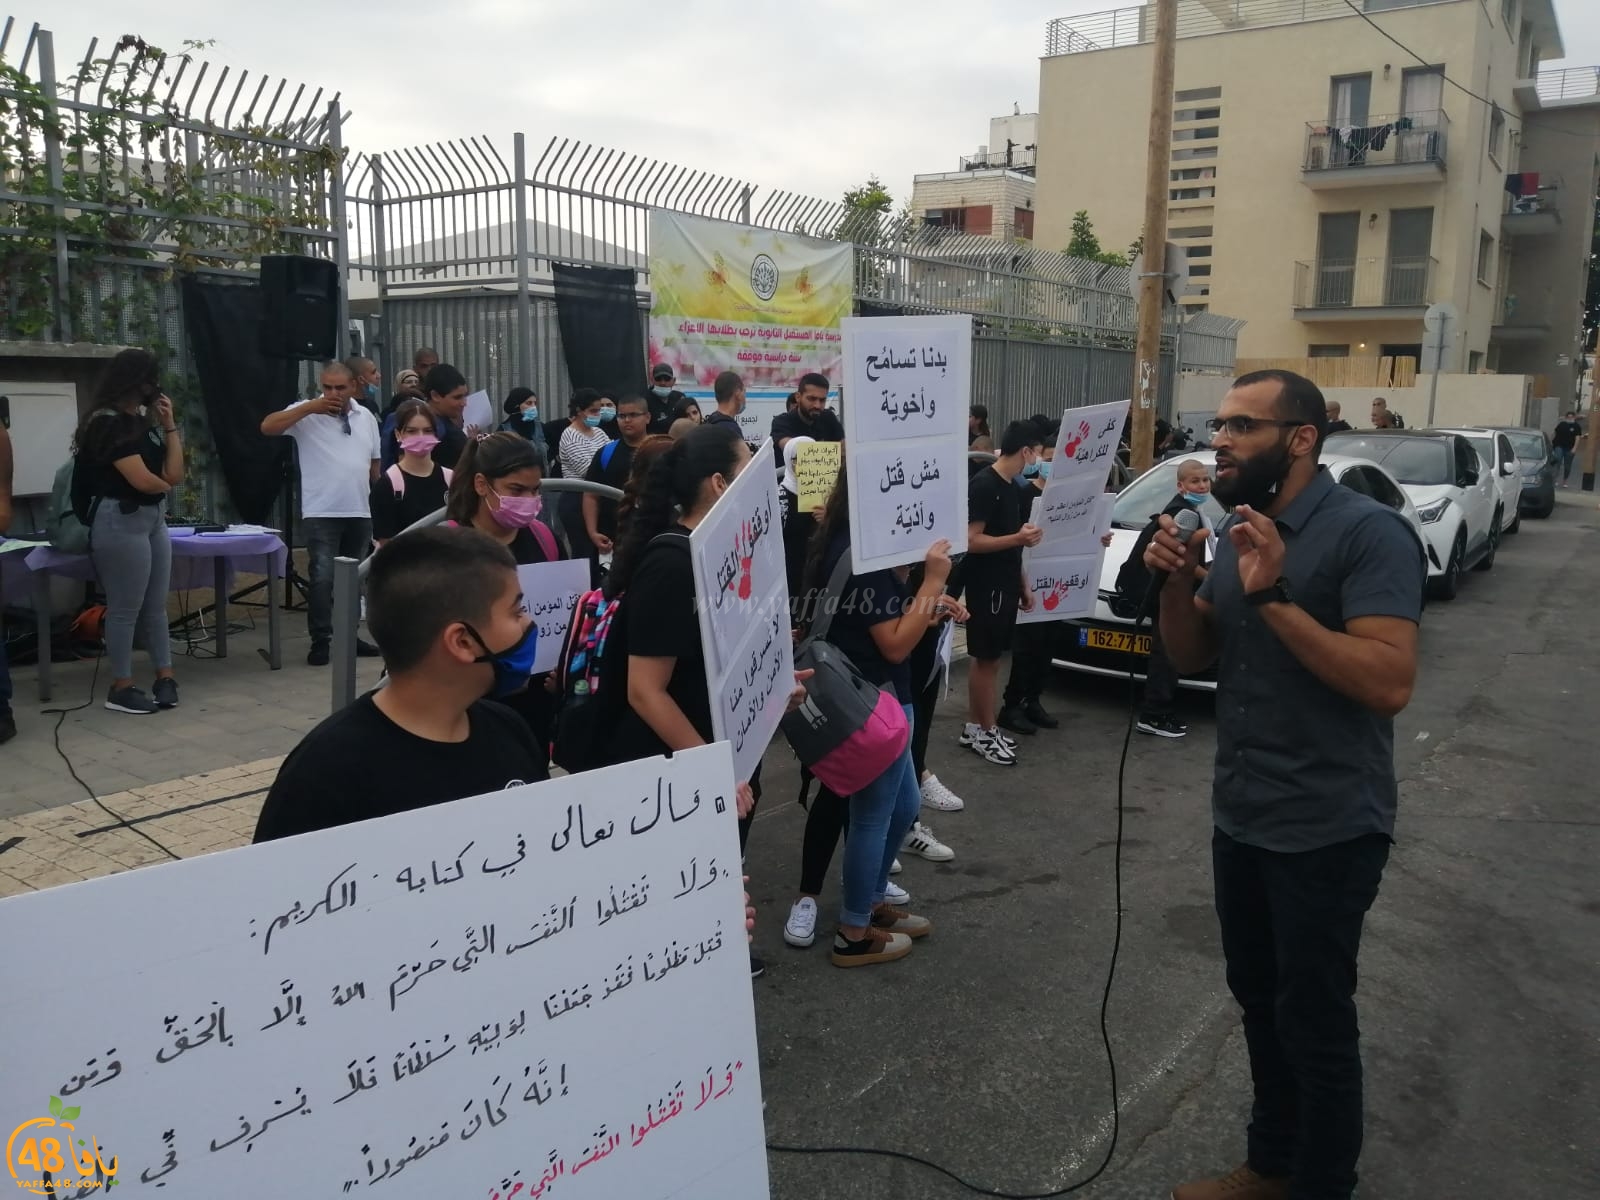  مدرسة يافا المستقبل تُنظم وقفة احتجاجية ضد العنف 